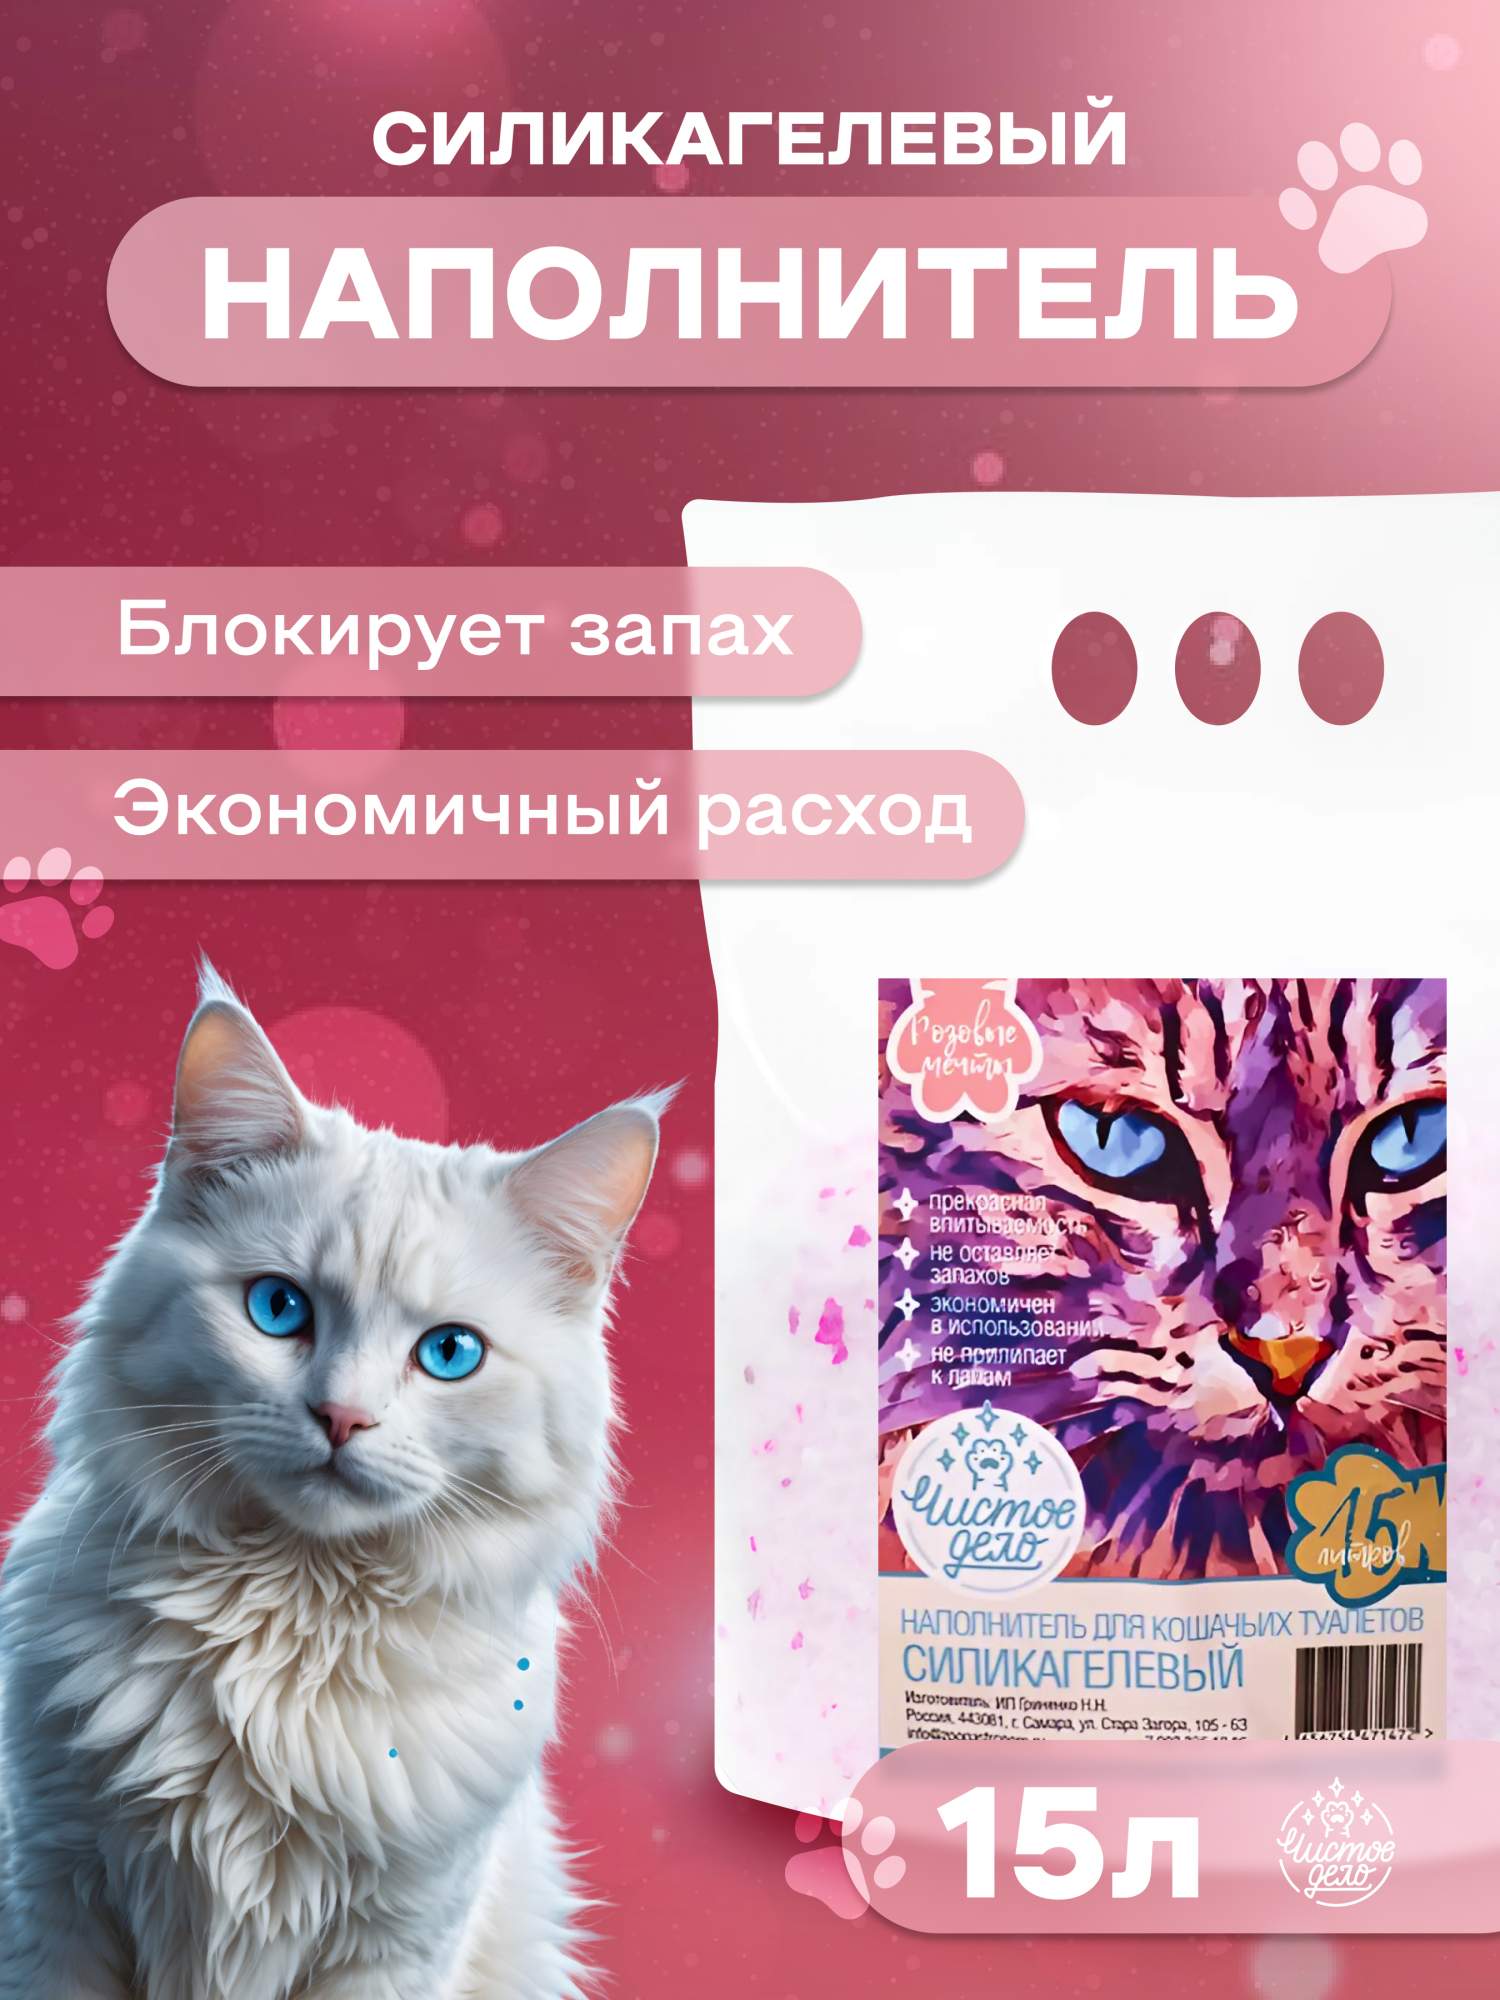 Наполнитель для кошачьего туалета Чистое дело, силикагелевый, Розовые мечты, 15 л